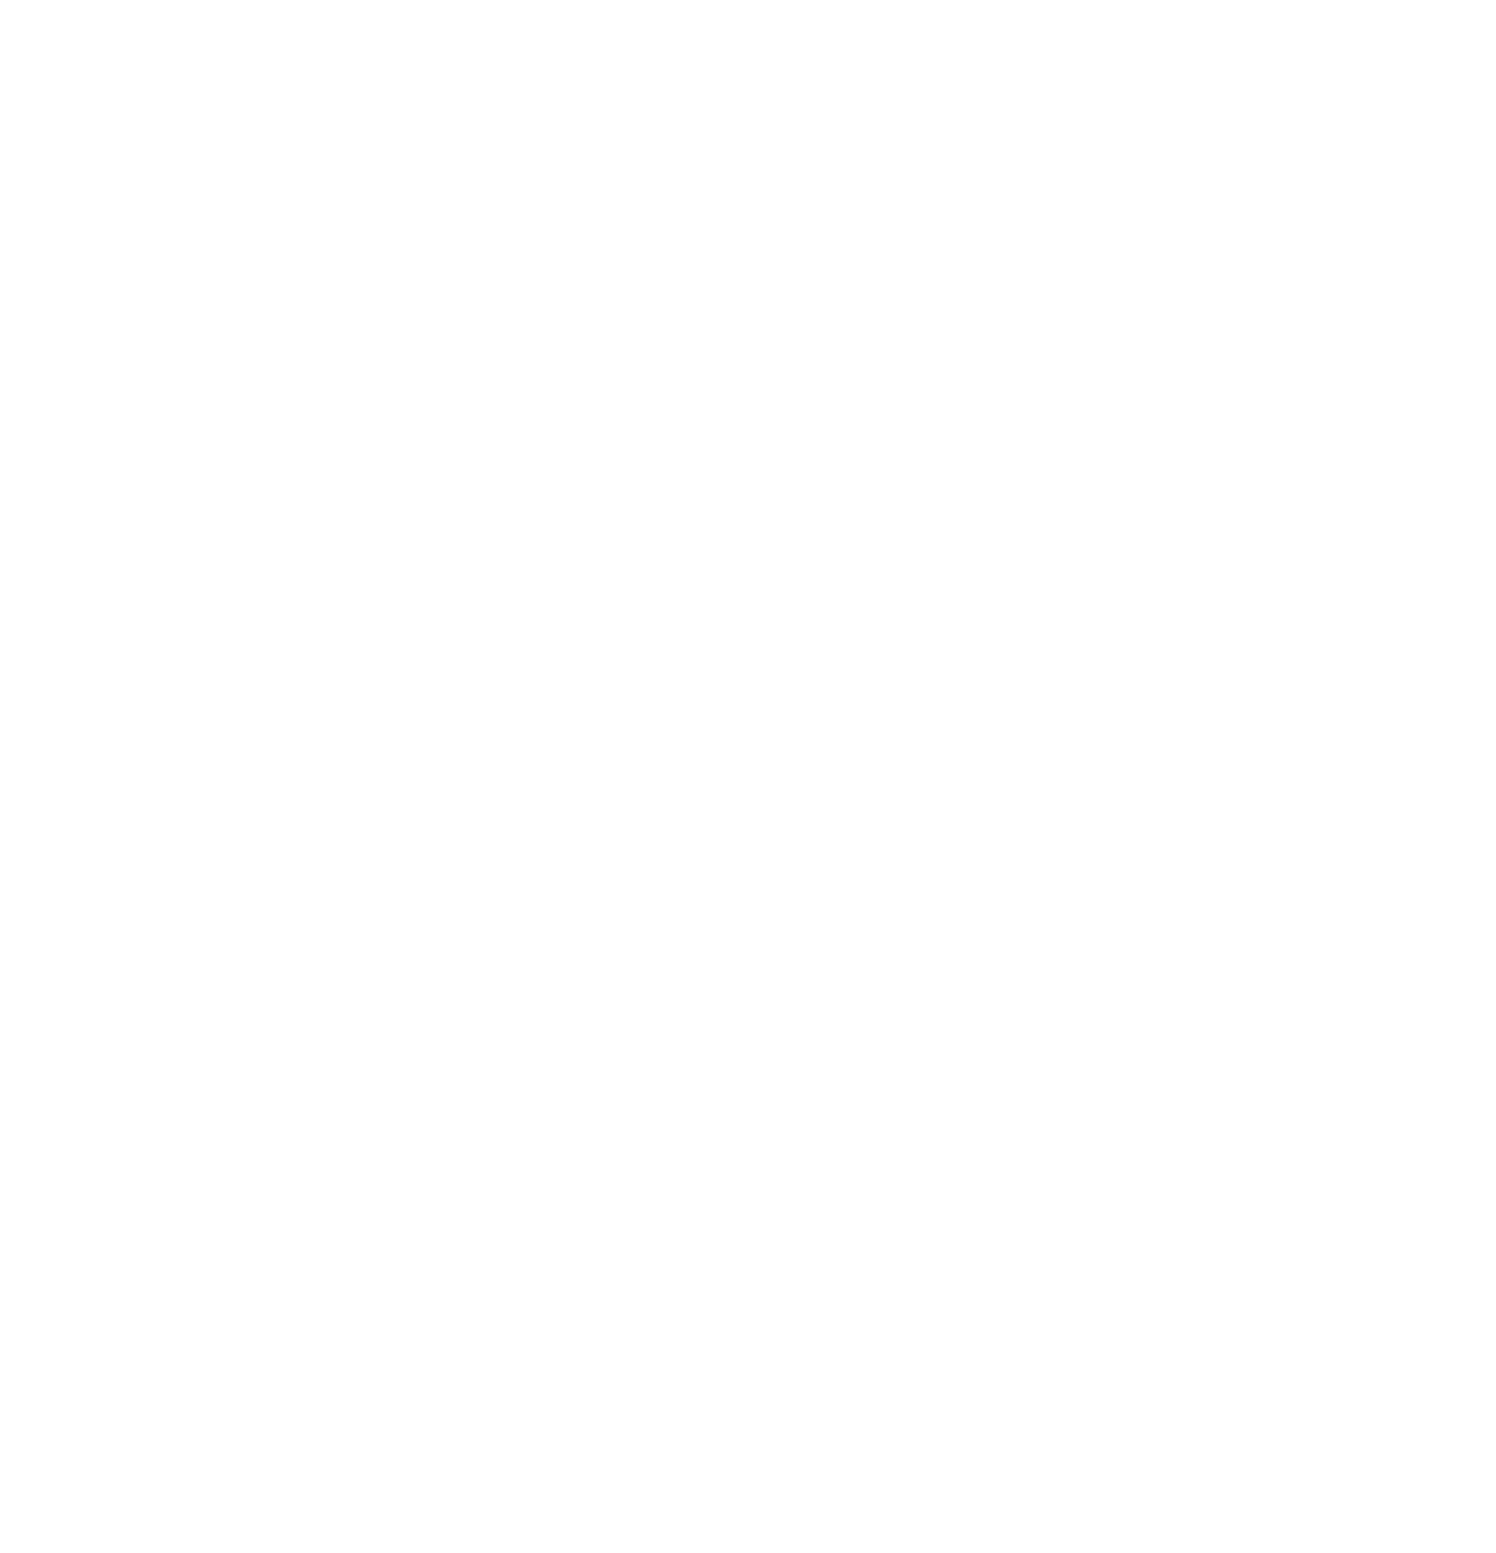 Asbury Automotive Group logo pour fonds sombres (PNG transparent)